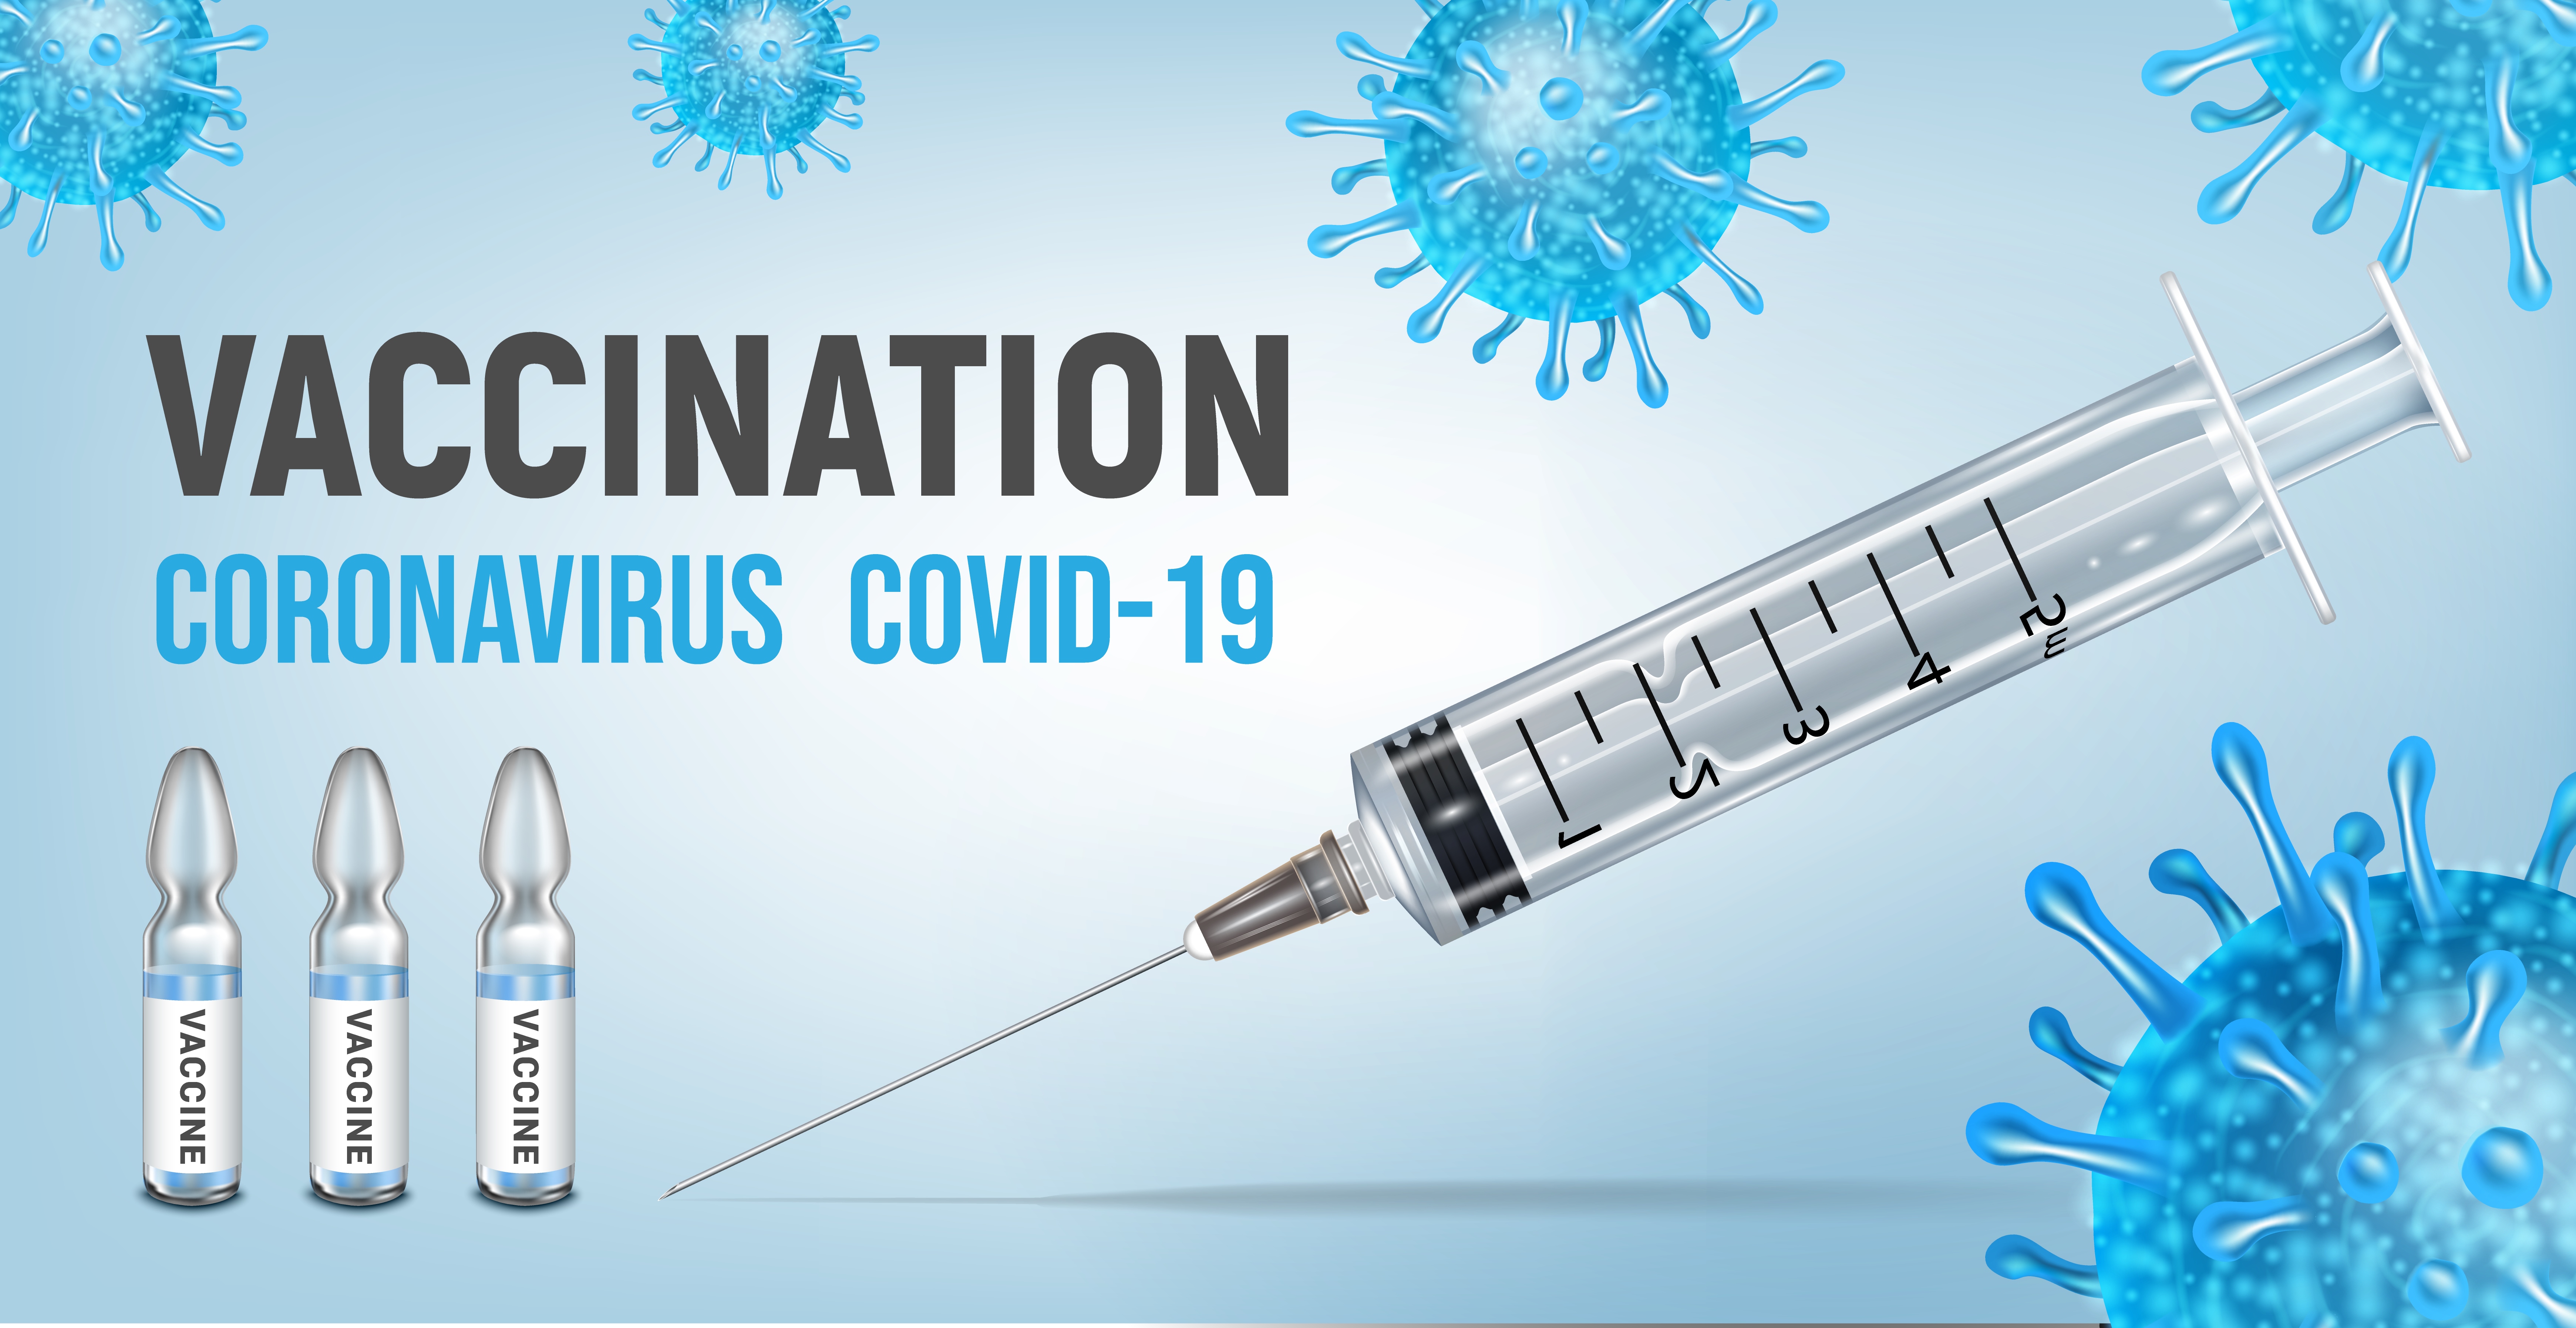 Вакцина на английском. Вакцинация Covid-19. Вакцинация картинки. Вакцинация от коронавируса баннер. Реклама вакцины от коронавируса.